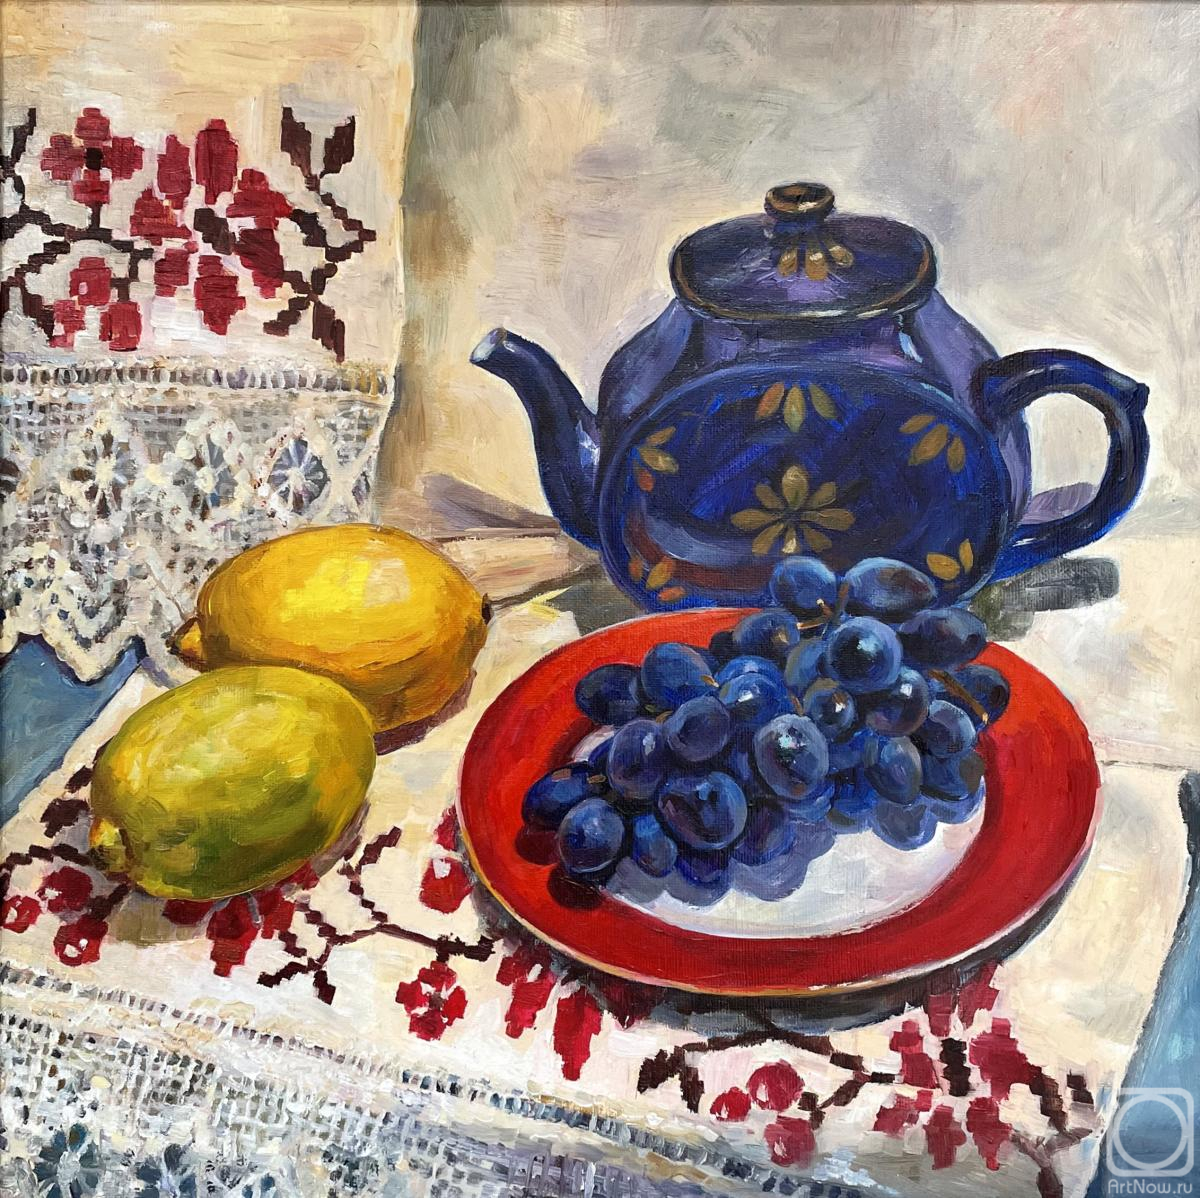 Veselkova Olga. Blue kettle